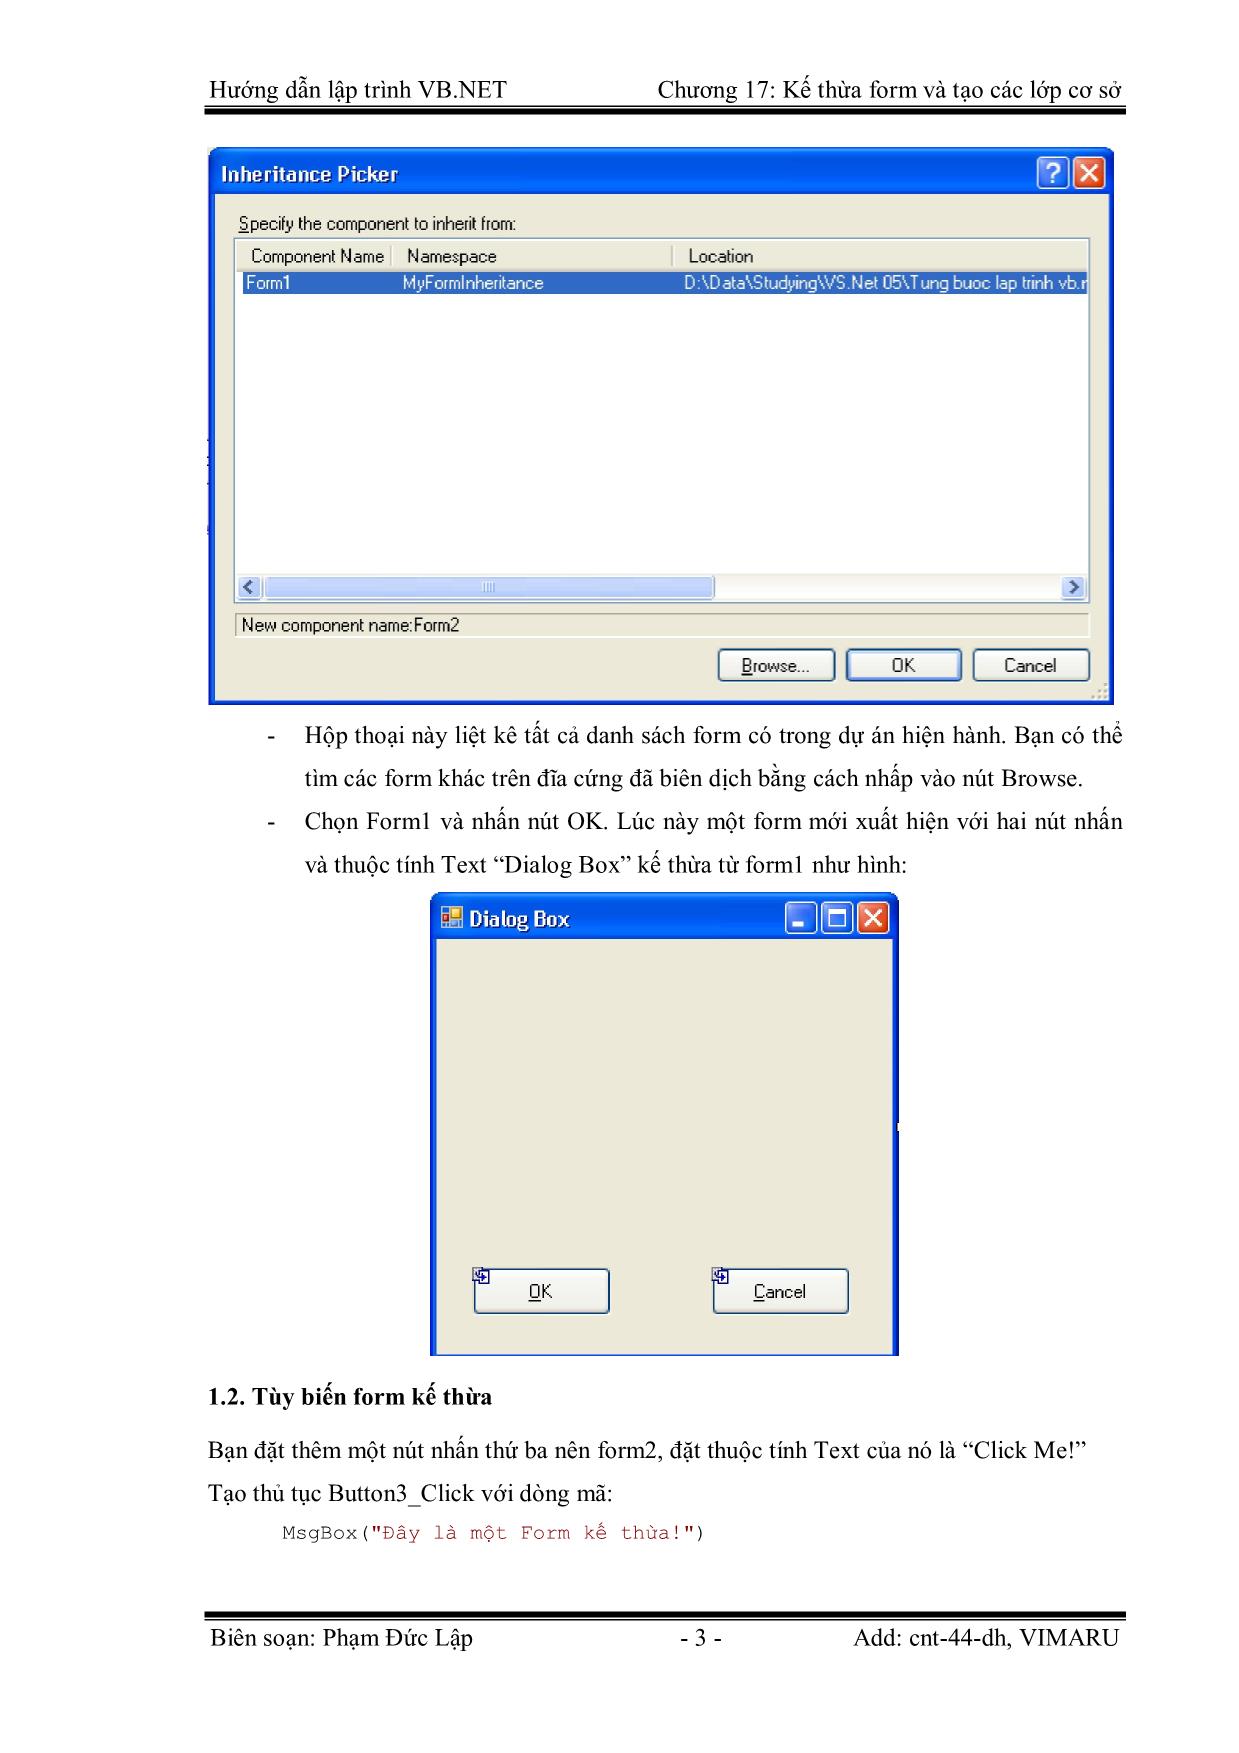 Giáo trình Hướng dẫn lập trình VB.NET - Chương 17: Kế thừa Form và tạo các lớp cơ sở - Phạm Đức Lập trang 3